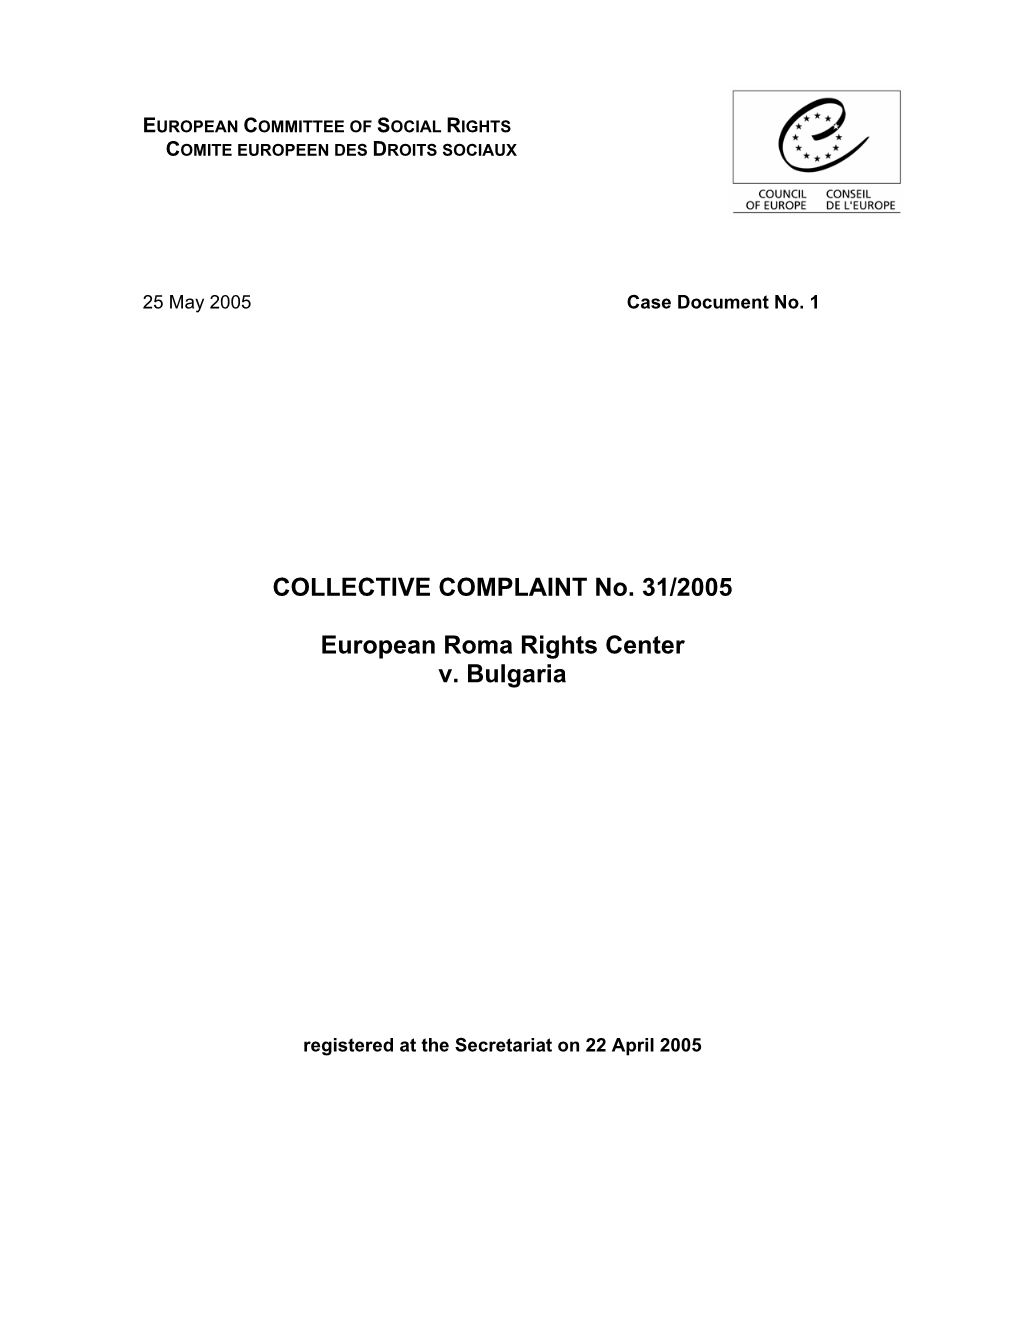 COLLECTIVE COMPLAINT No. 31/2005 European Roma Rights Center V. Bulgaria